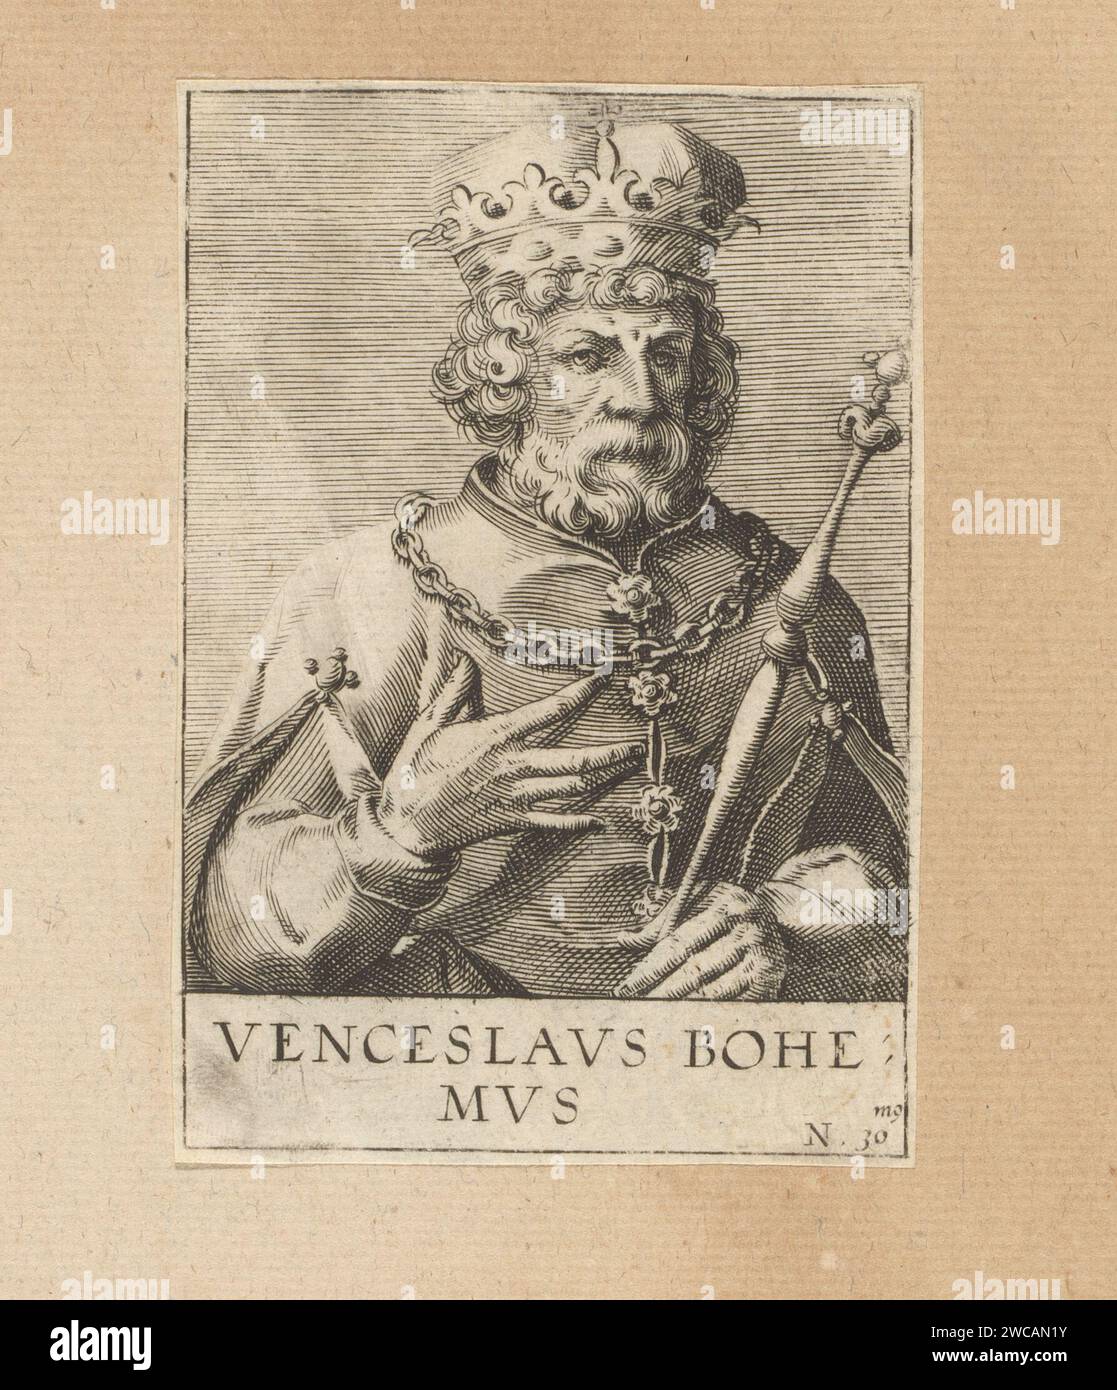 Ritratto di Venceslao II, anonimo, dopo Johann Hogenberg, 1574 - 1594 stampa numerata: 30. La stampa fa parte di un album. Carta di Colonia persone storiche. re Foto Stock